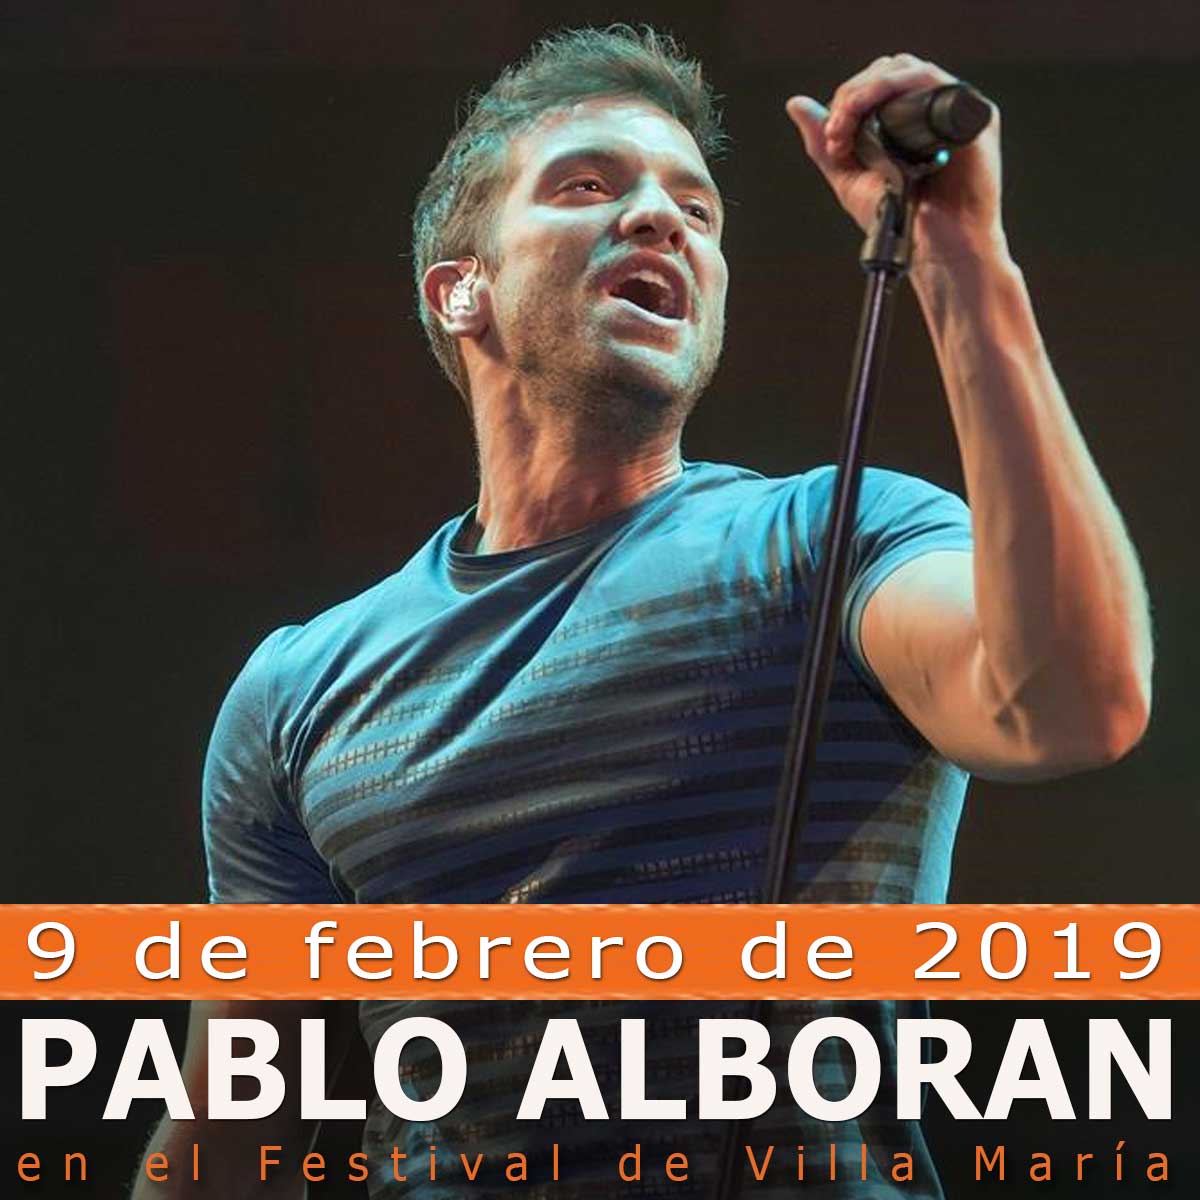 Pablo Alborán en el Festival Villa María 2019